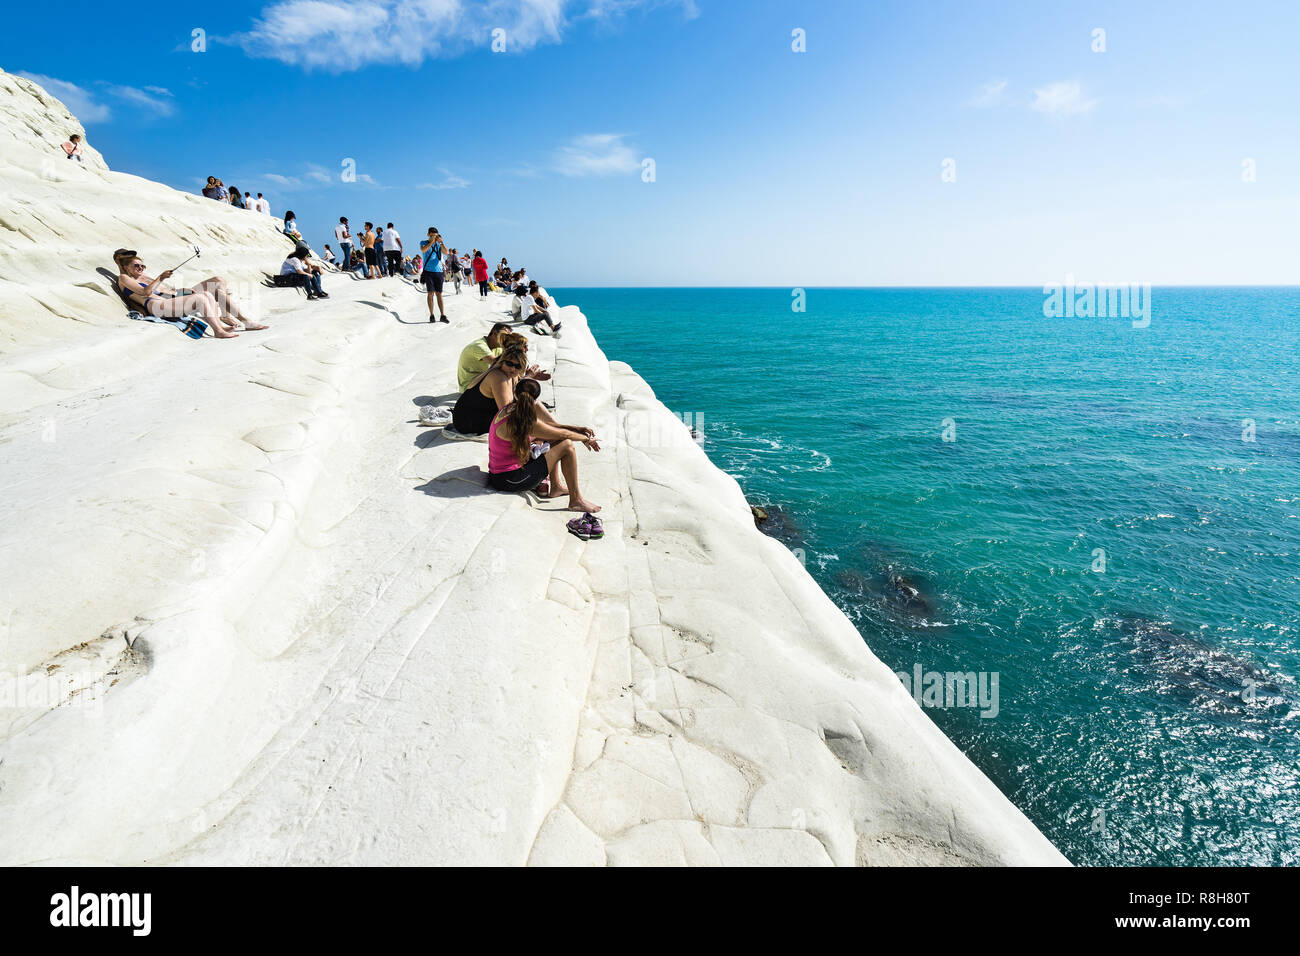 Les touristes à la Scala dei Turchi bénéficiant d'une belle vue sur les eaux turquoises de la mer Méditerranée, Realmonte, province d'Agrigente, Sicile, Italie Banque D'Images